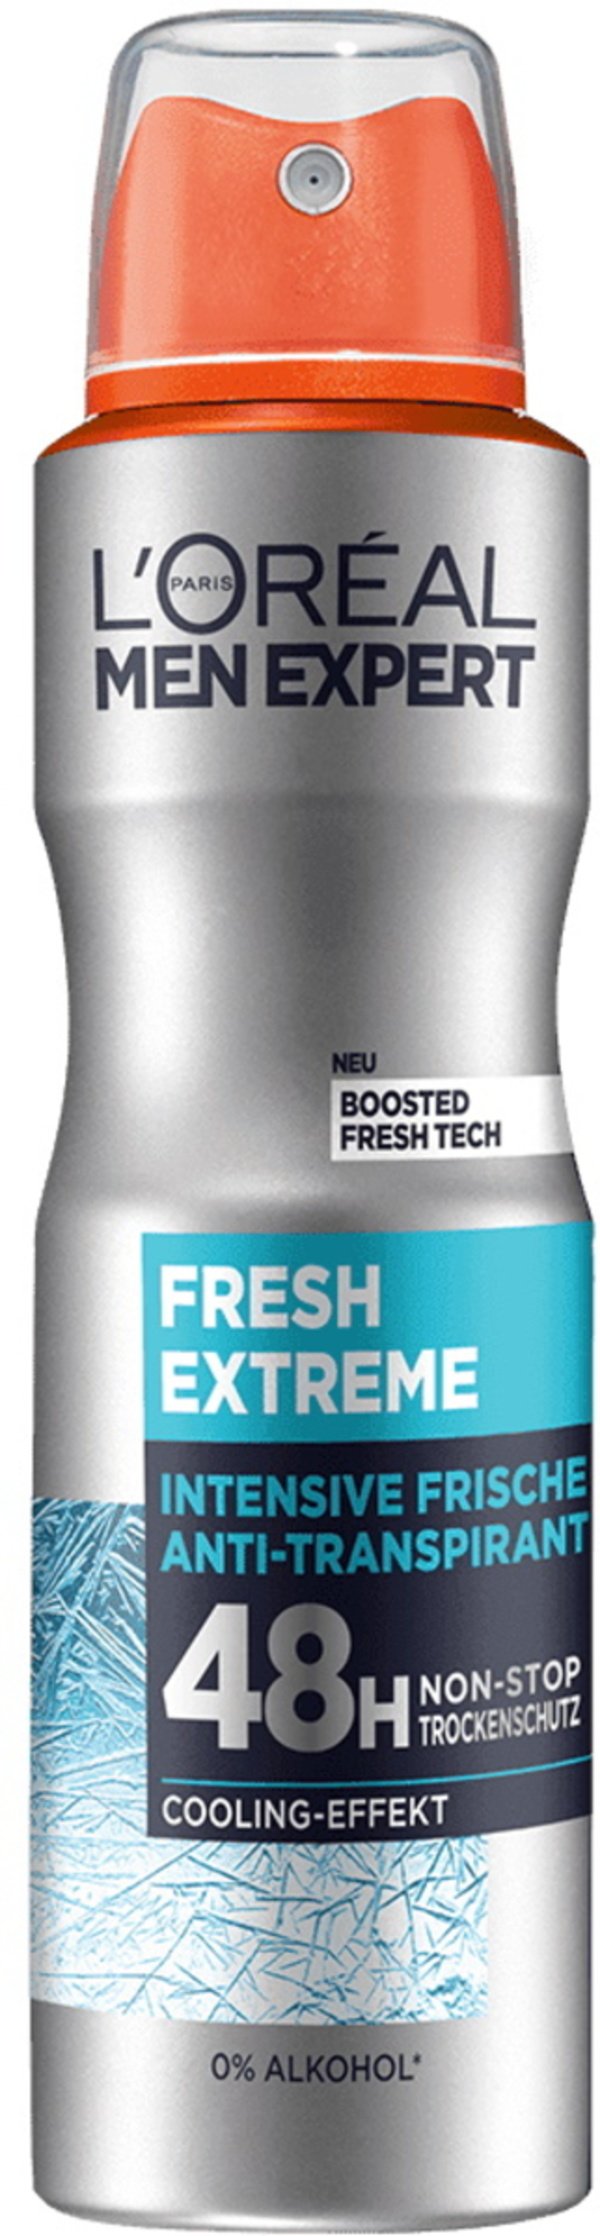 Bild 1 von L'Oreal Men Expert Fresh Extreme Intensive Frische Anti-Transpirant 48H 150ML